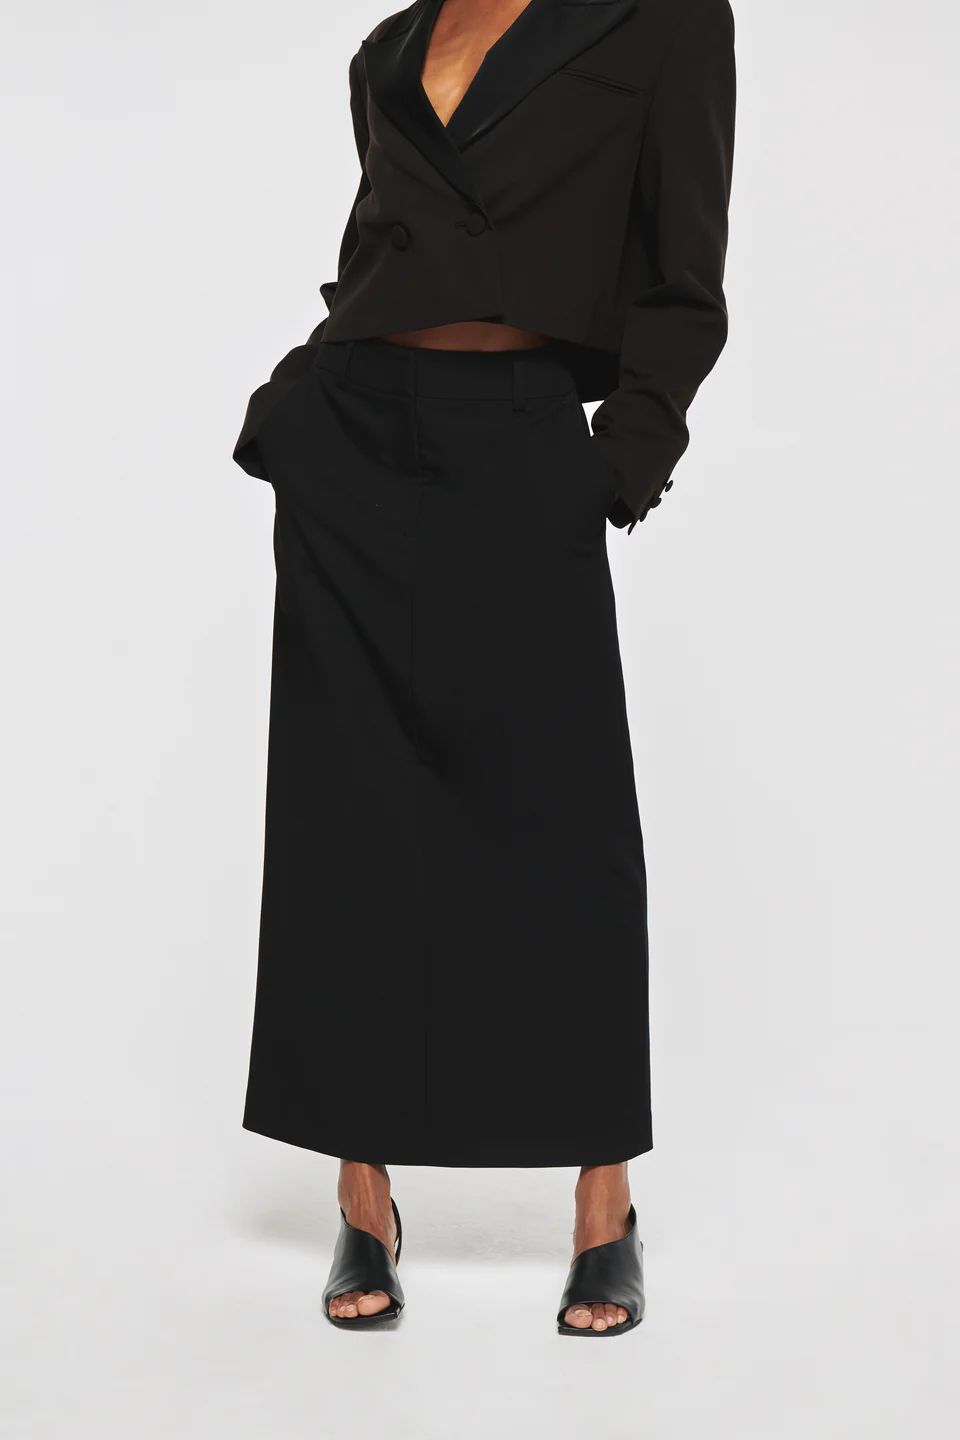 Lani | Tailored Maxi Skirt in Black | ALIGNE | Aligne UK